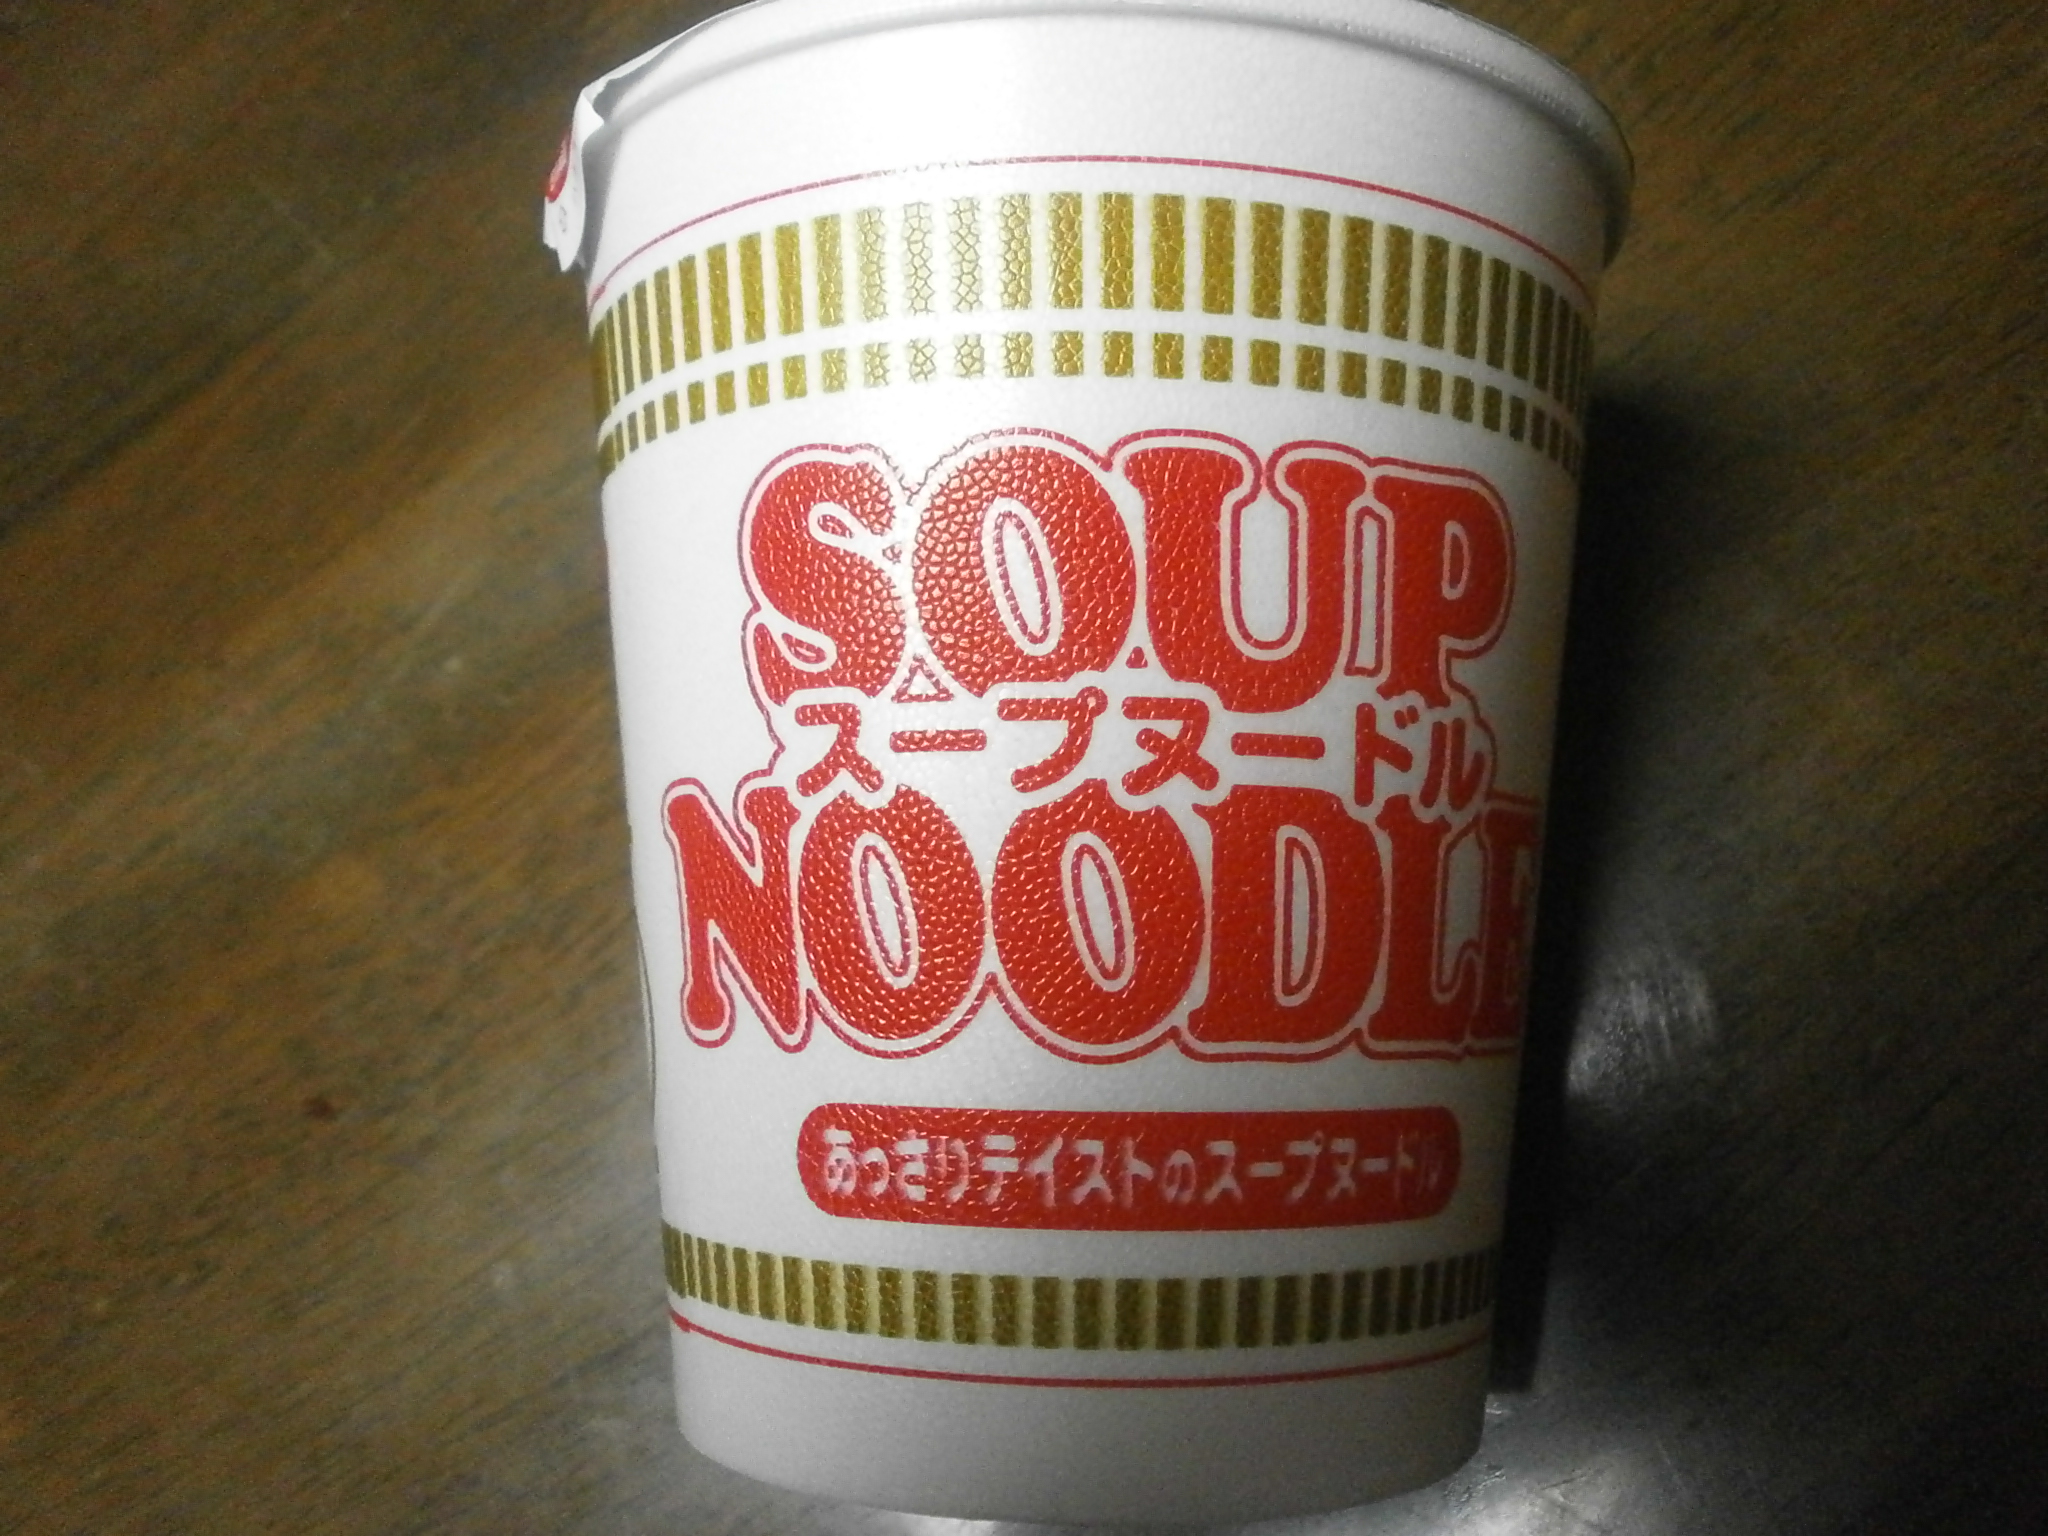 Noodle Soup (Taste offen).